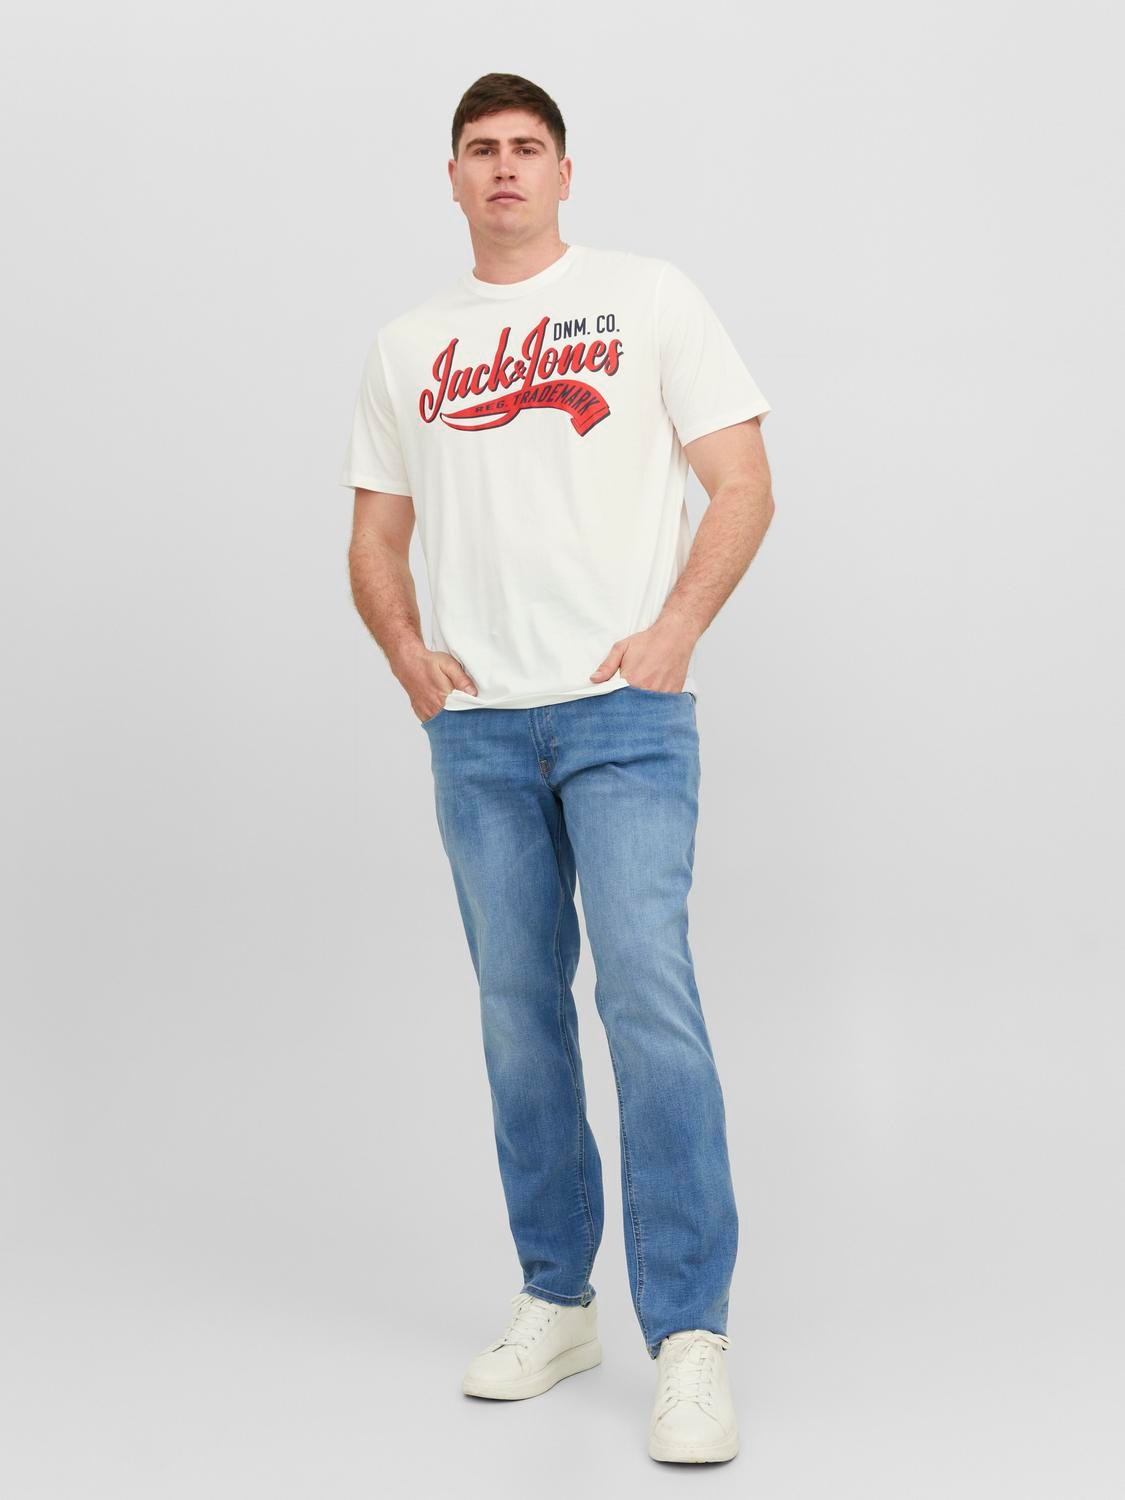 Jack & Jones Plus Size T-shirt Logo -Cloud Dancer - 12243611